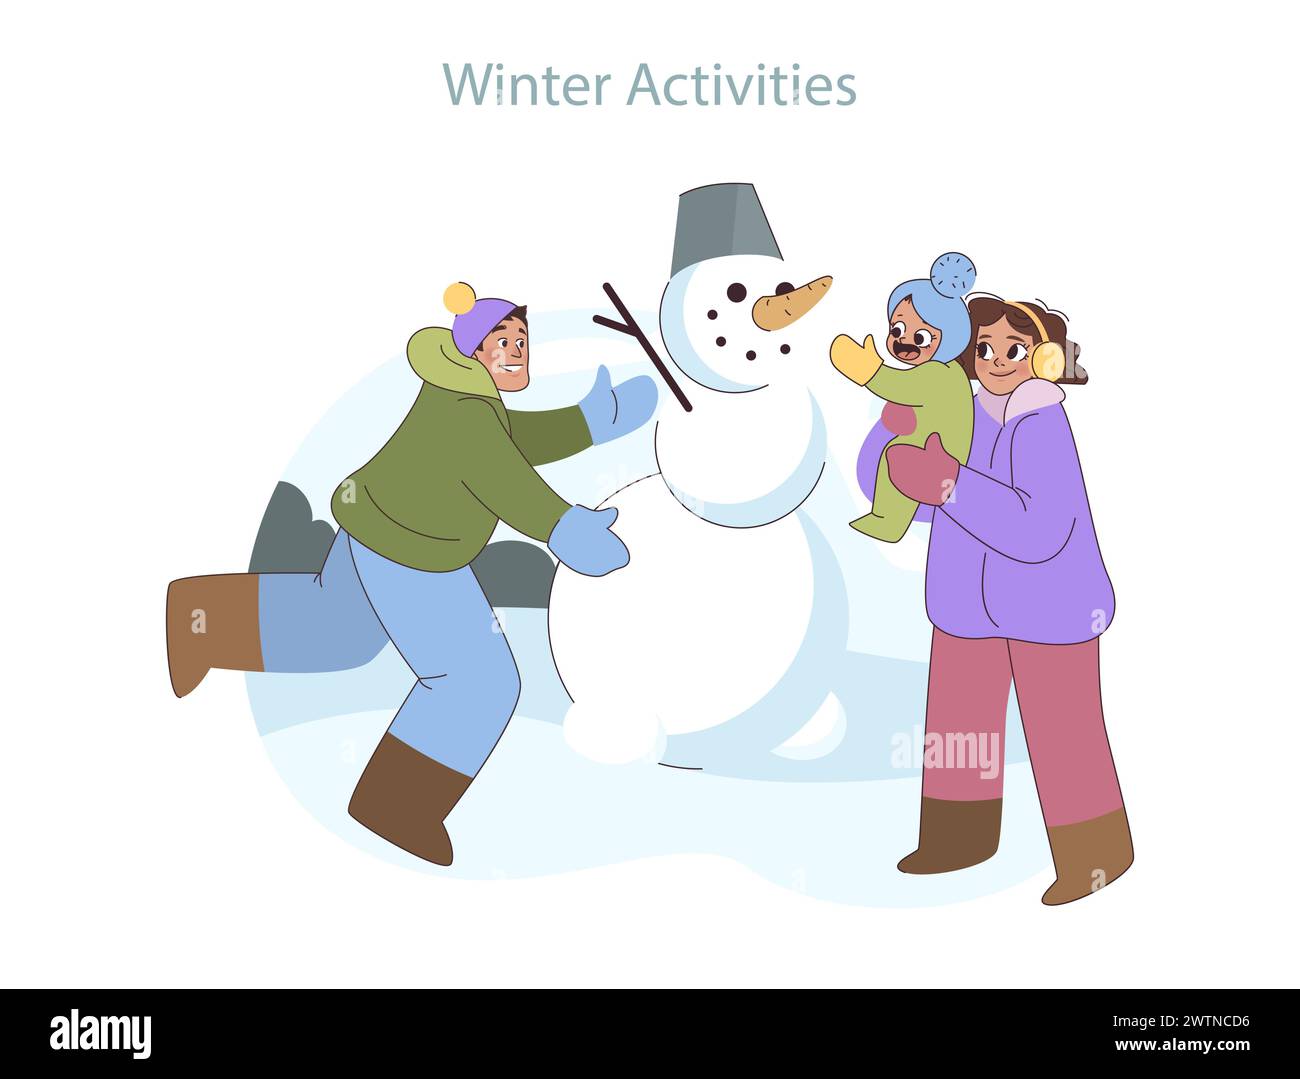 Frostiges lustiges Set. Fröhliche Familienmomente bauen einen Schneemann und feiern die Verspieltheit des Winters. Kalte Tage, erwärmt von geteiltem Lächeln. Stock Vektor